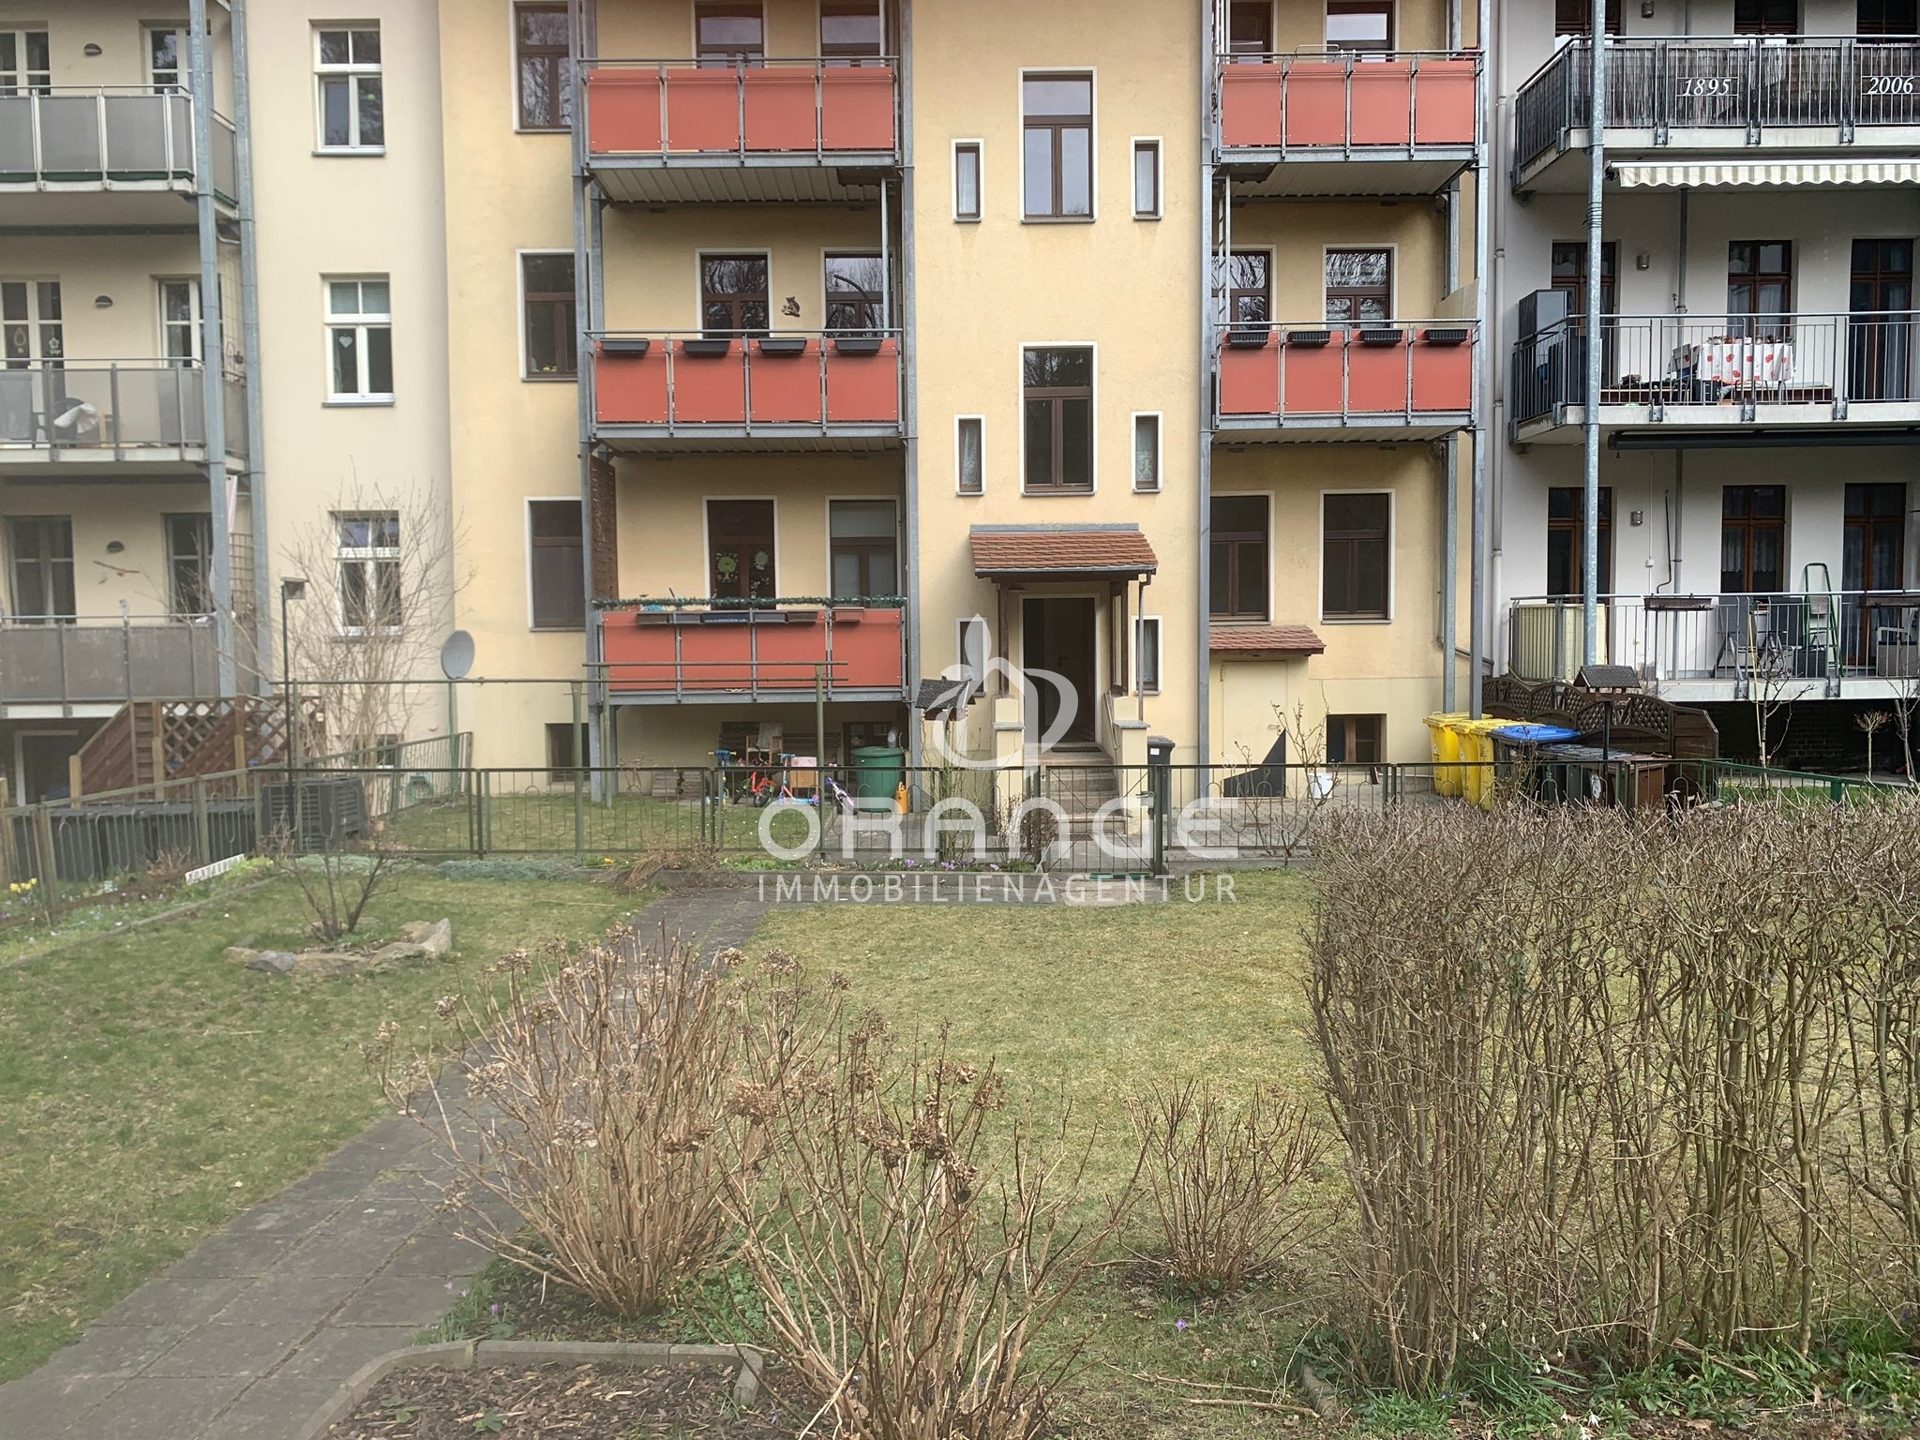 Immobilienangebot - Görlitz - Alle - ***Beste Lage Neisse Blick***